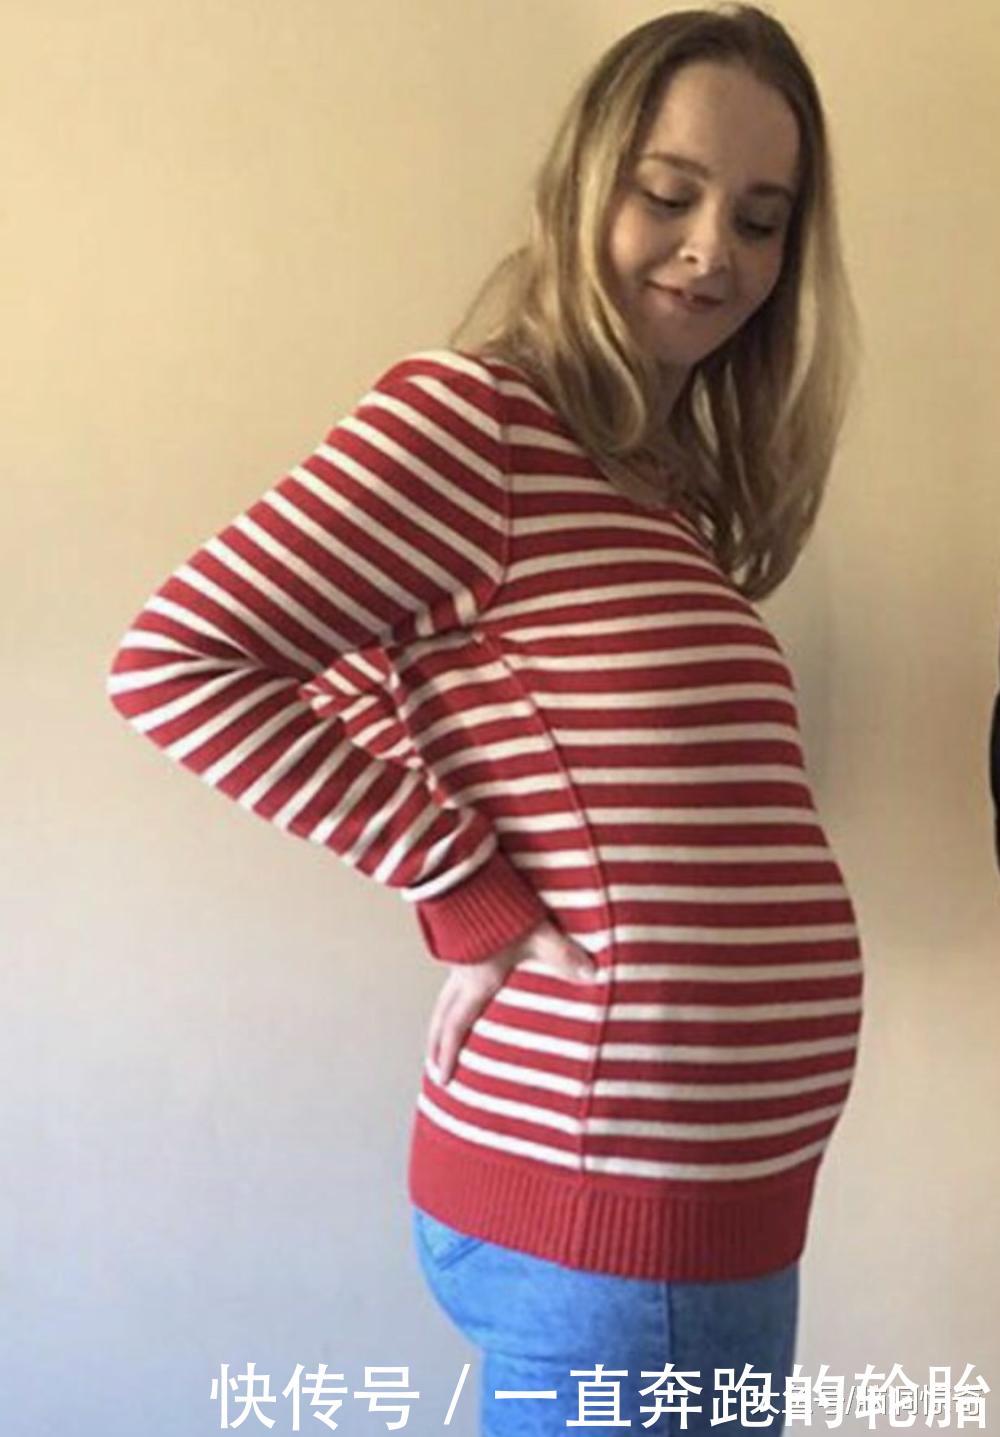 女子肚子隆起25cm以为怀孕, 医生检查后 里面有7个"葫芦娃"